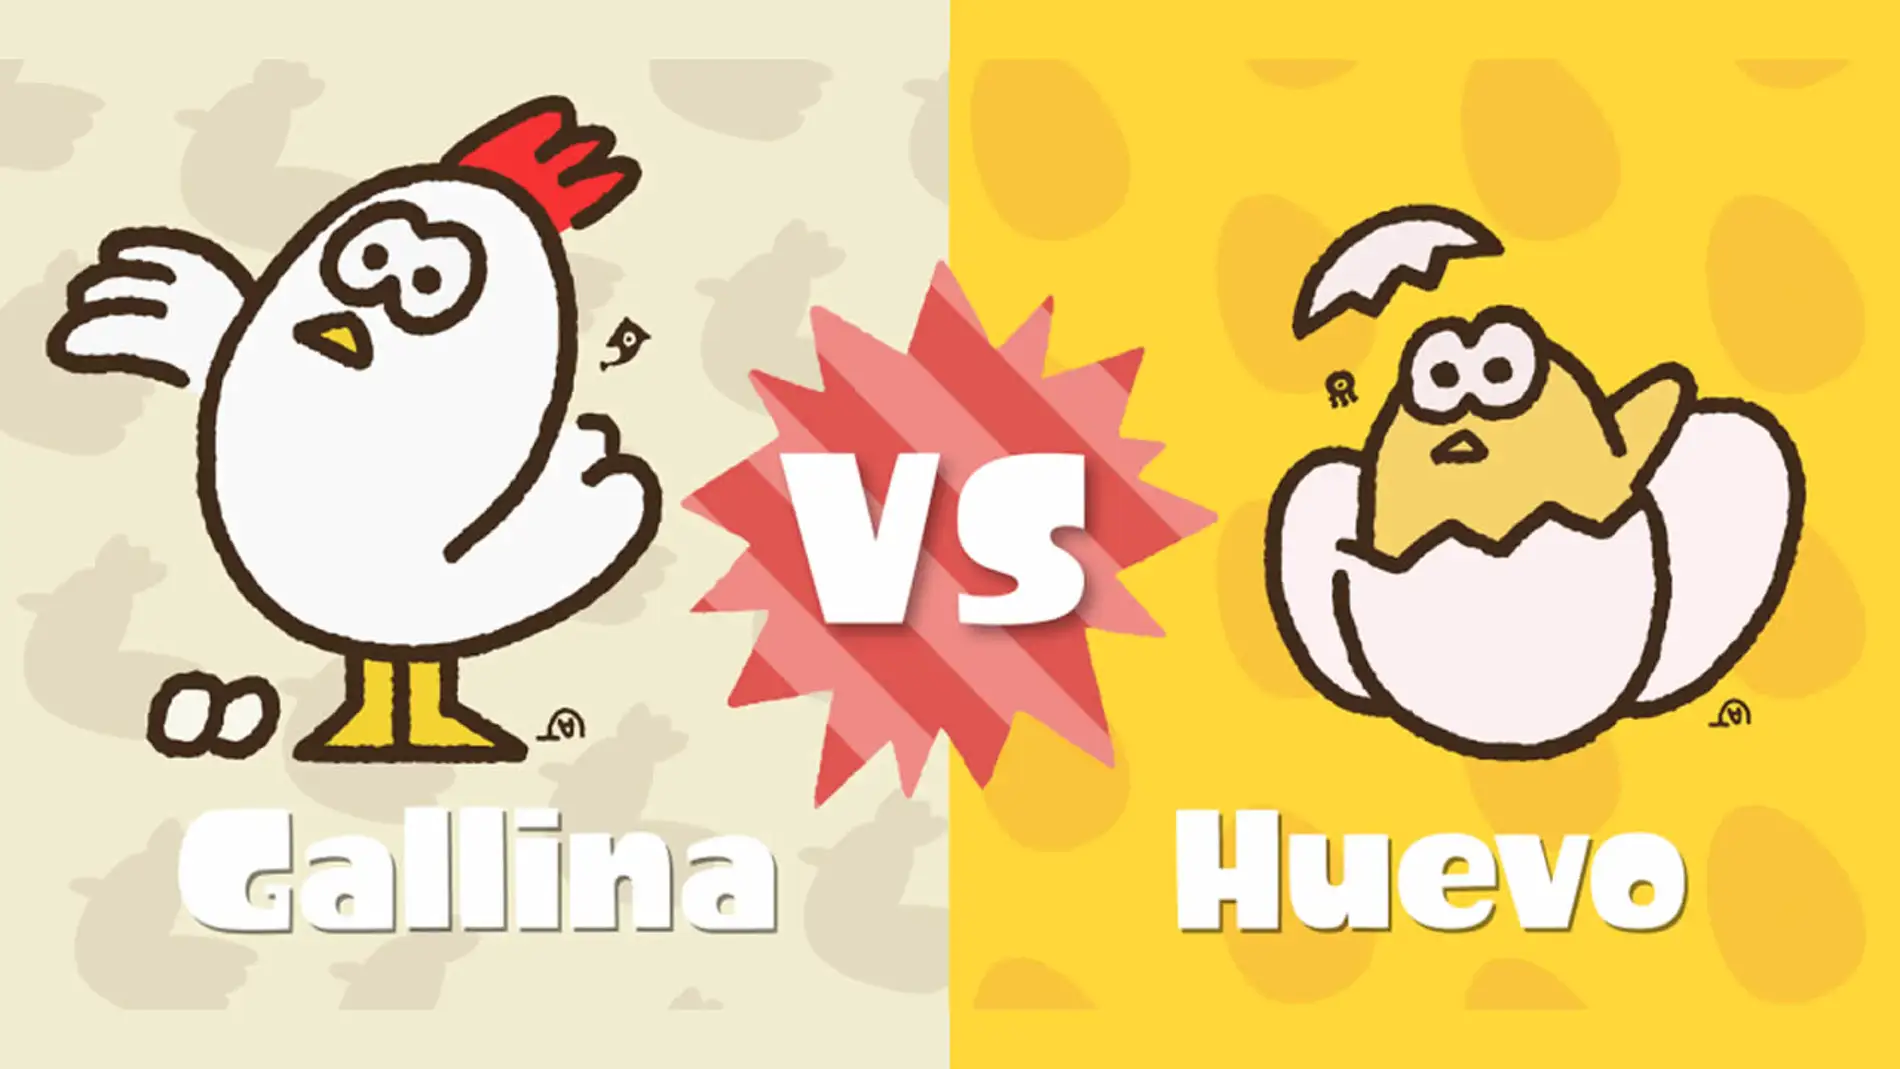 Gallina vs Huevo